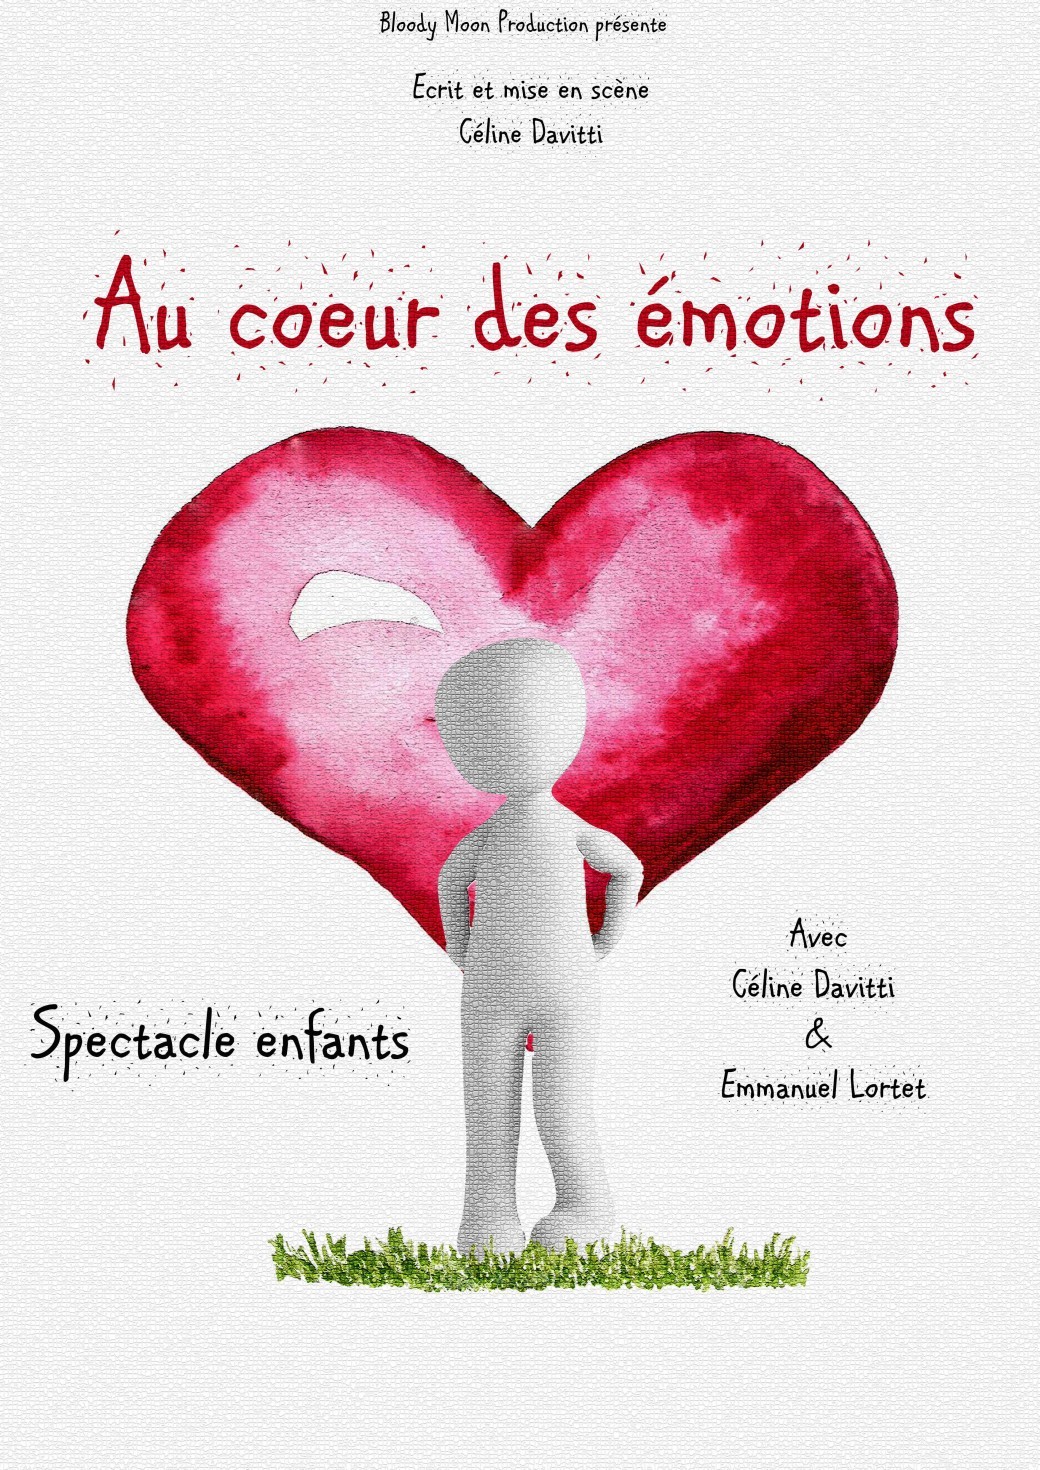 Celine Davitti et Emmanuel Lortet dans "Au coeur des émotions"